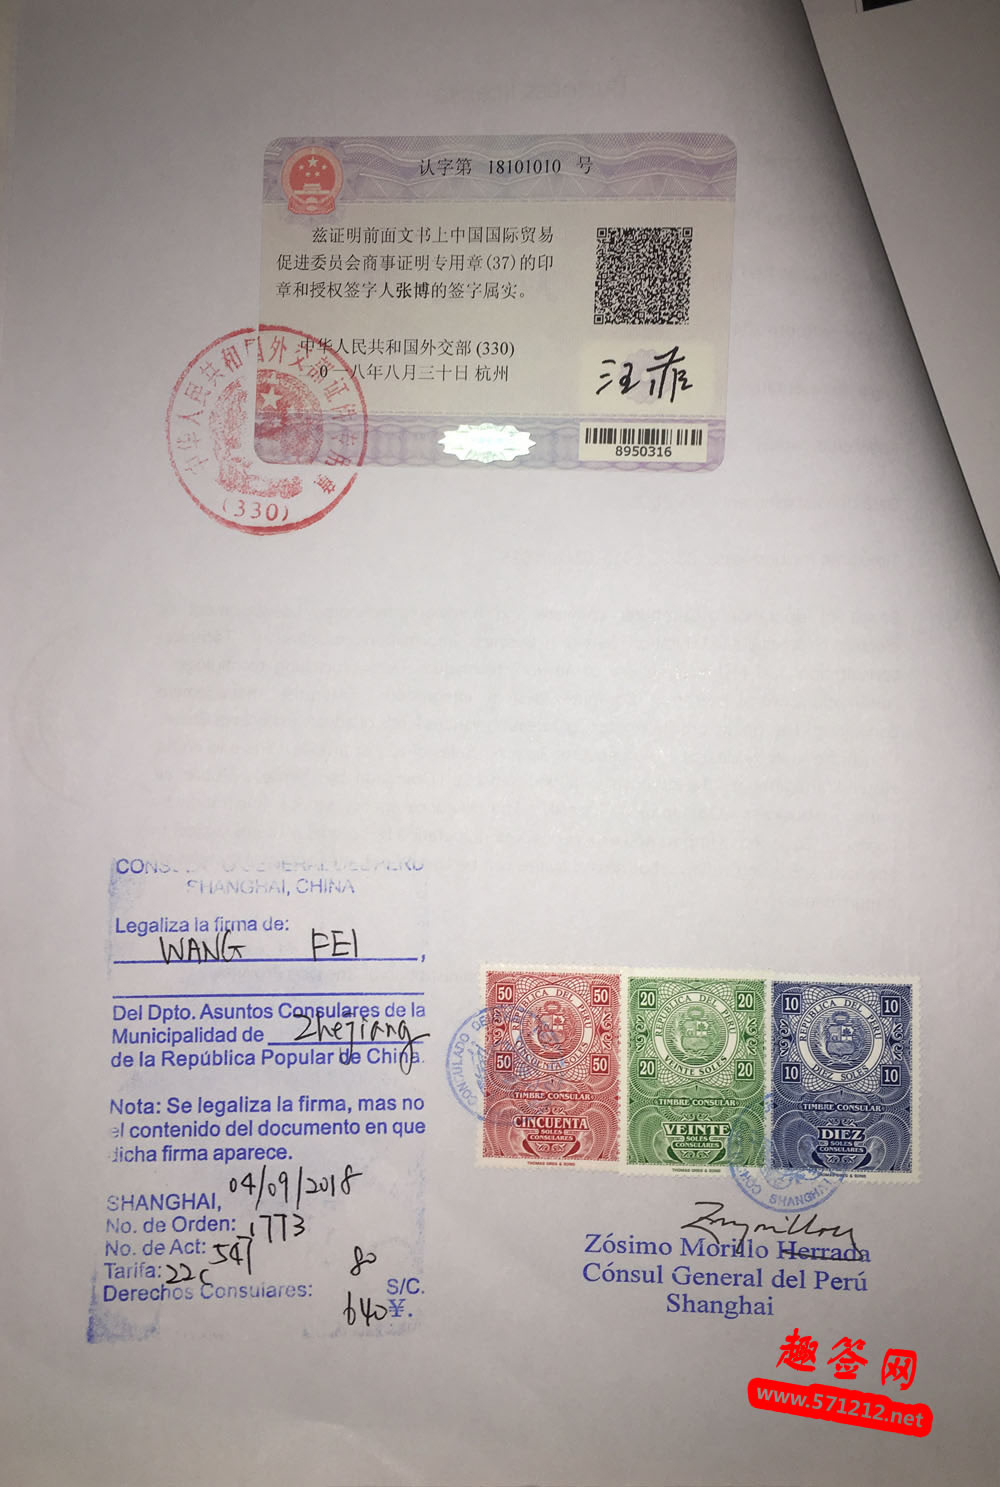 秘鲁大使馆认证样本，秘鲁使馆加签